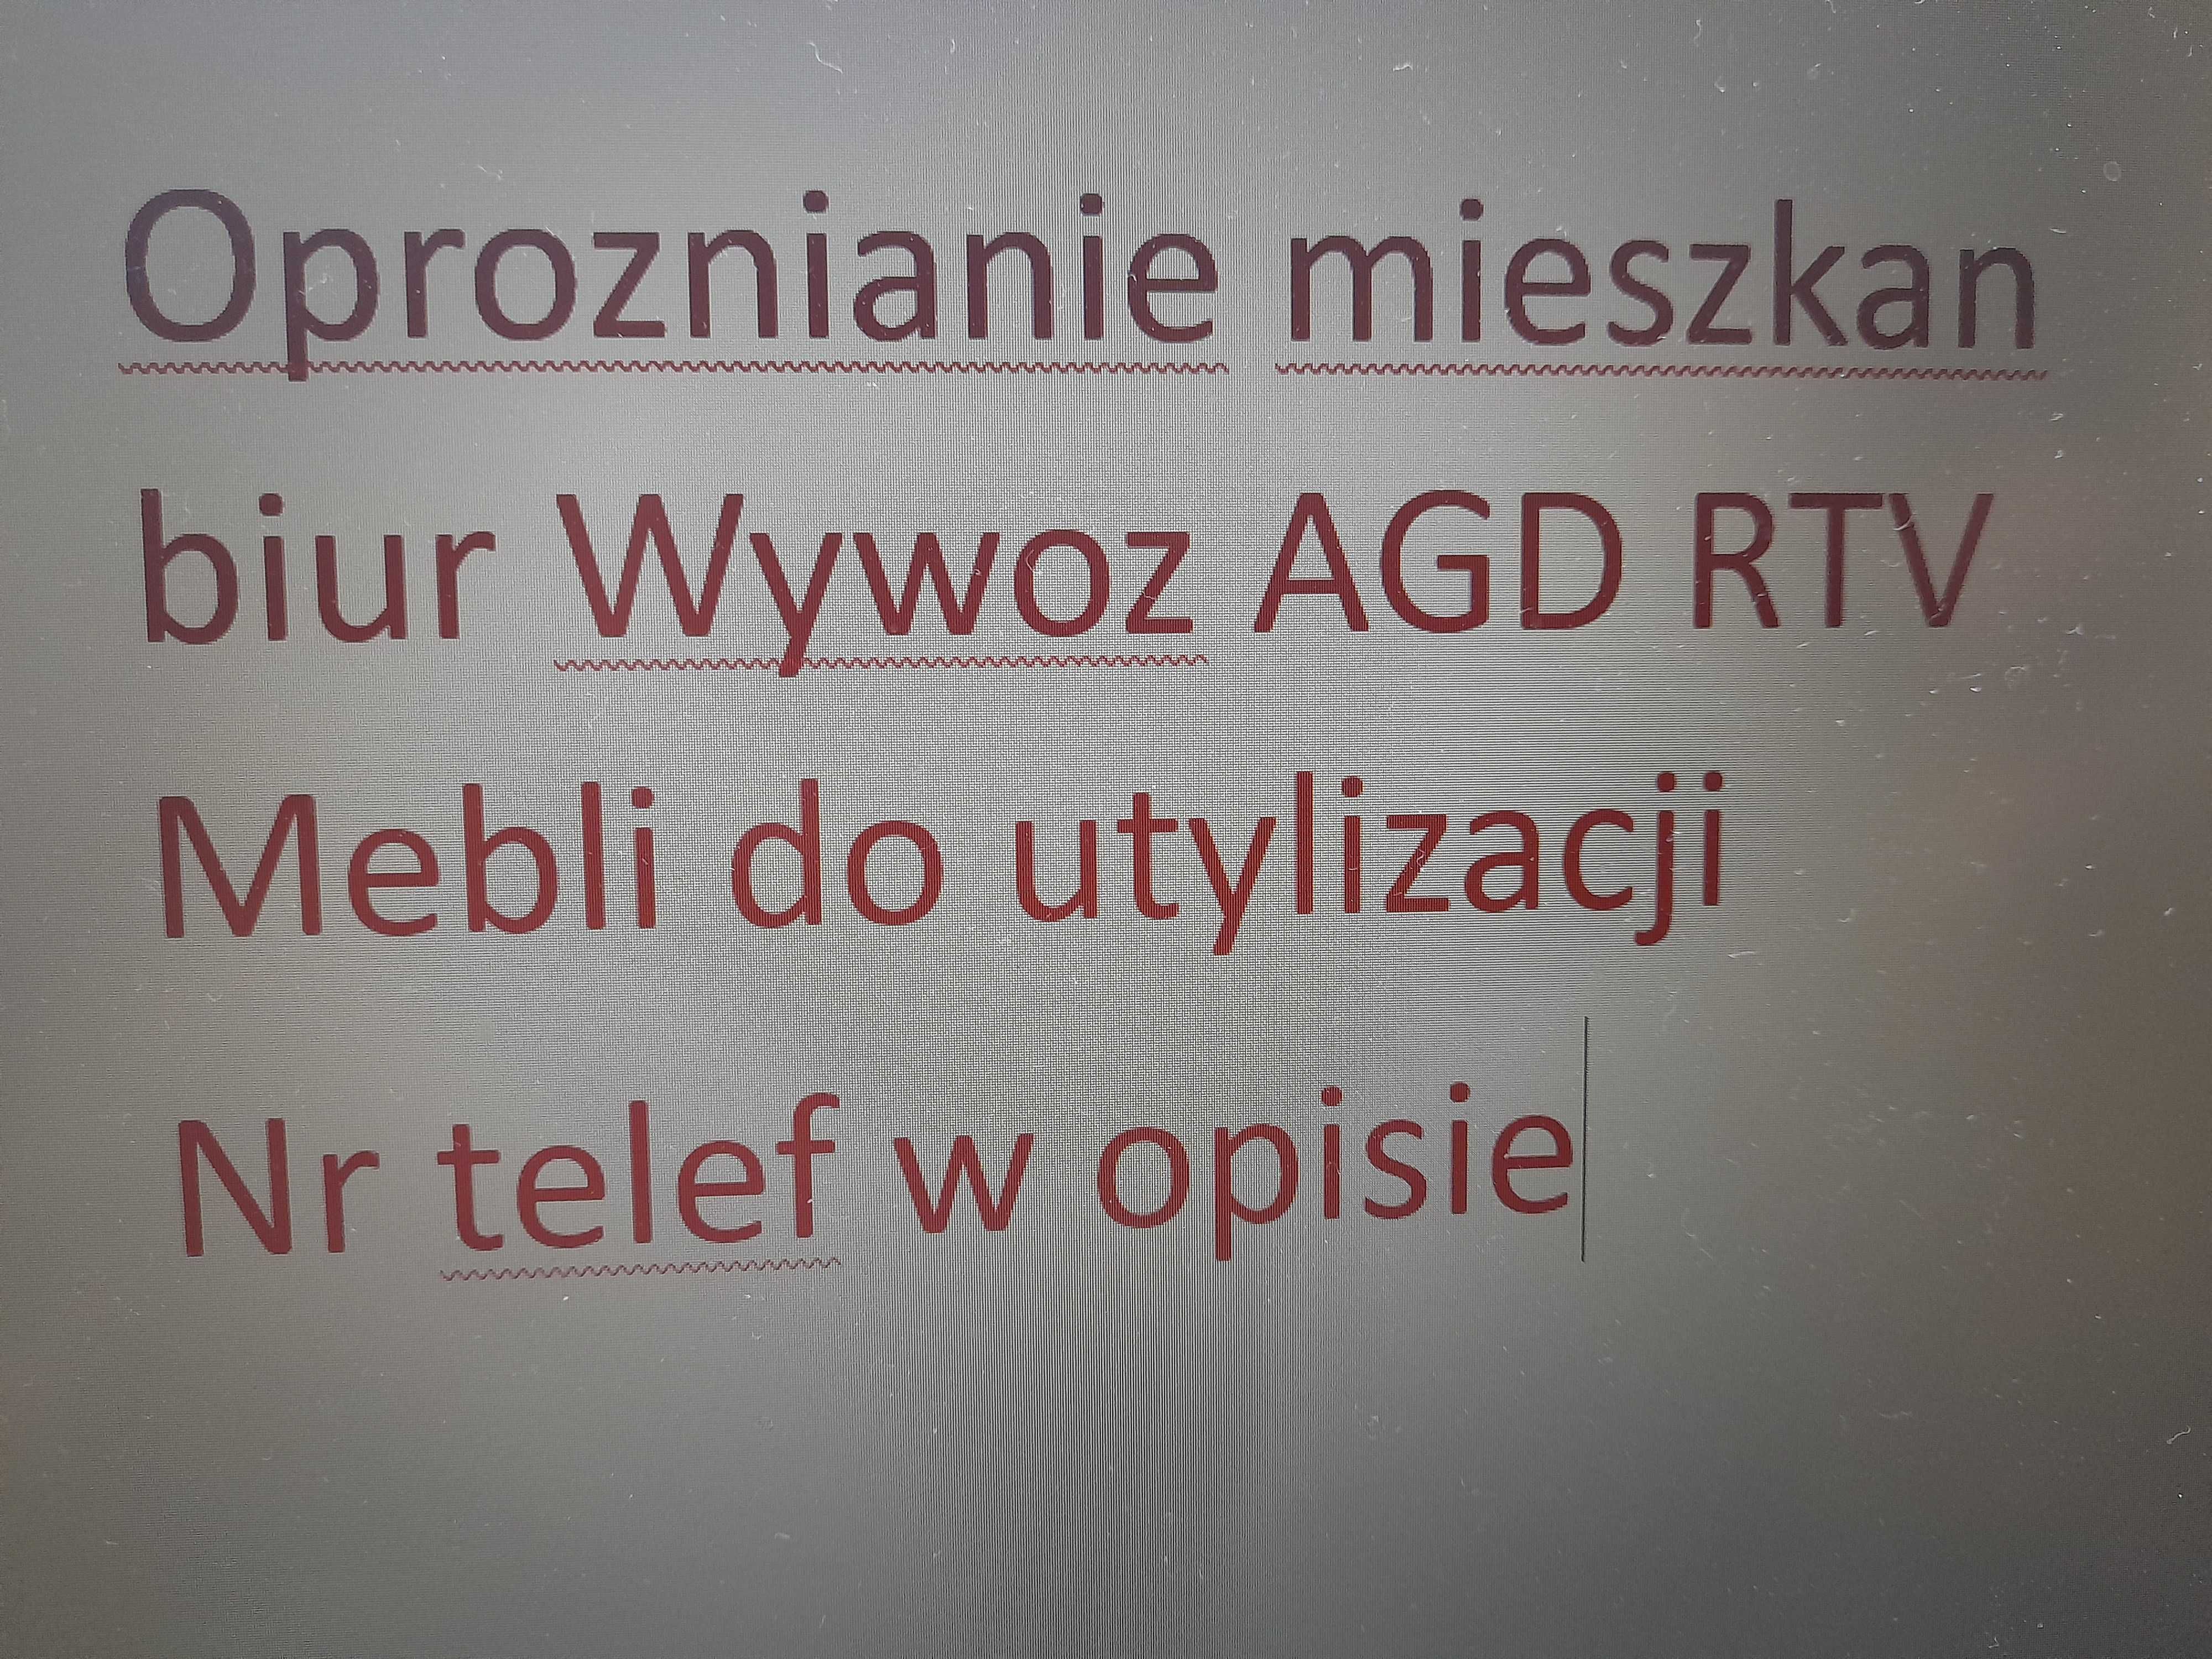 Oproznianie mieszkan biur Wywoz AGD RTV Mebli do utylizacji Zabrze